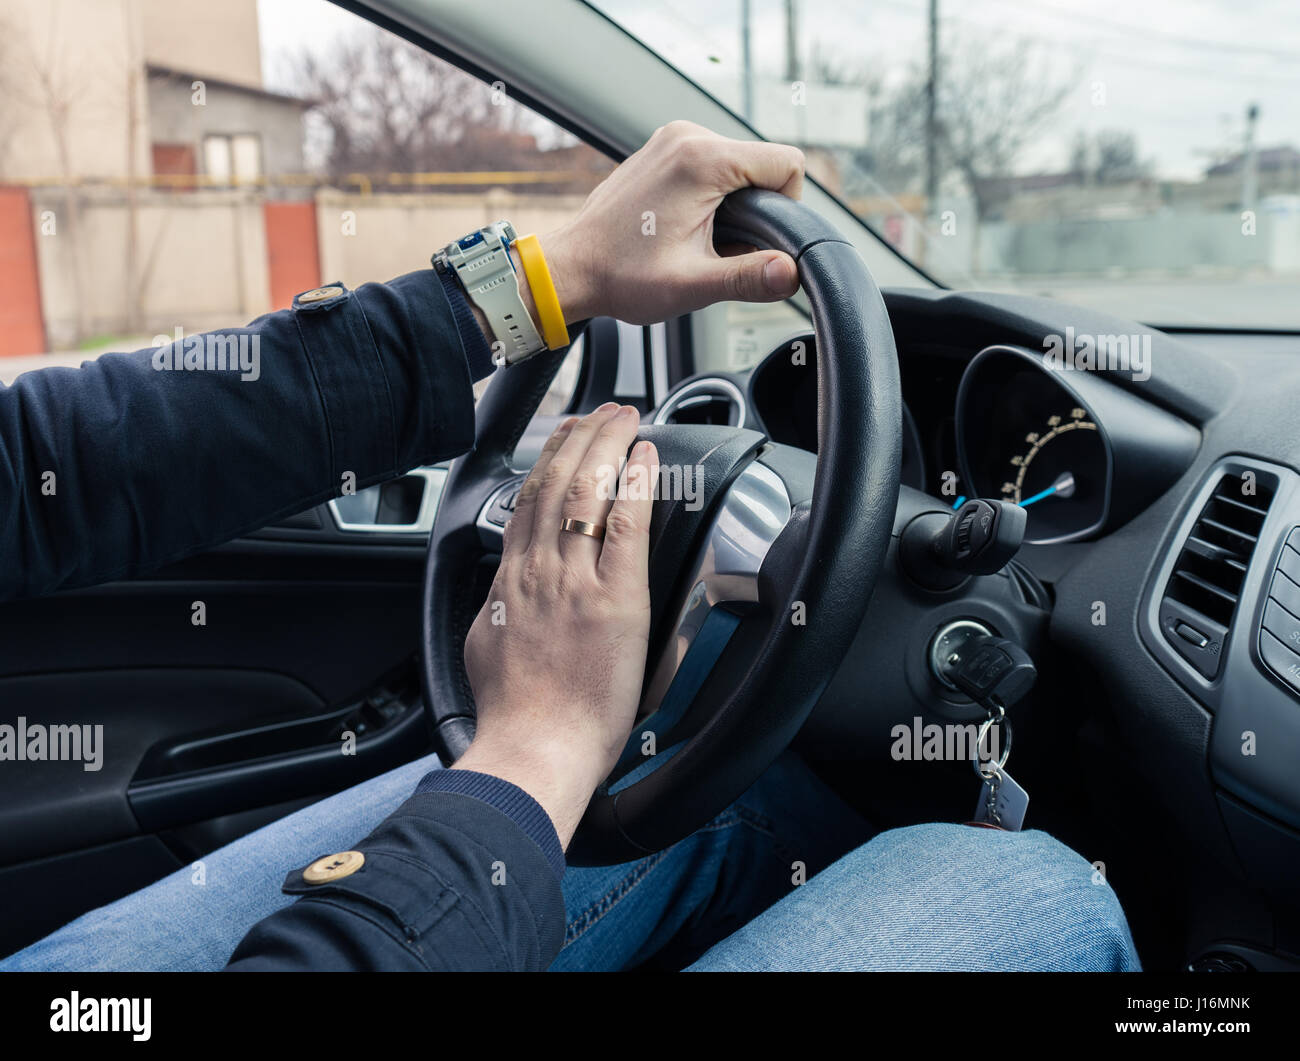 Frau Fahrer Hand hupen ihr Auto Hupe, um Unfall zu verhindern.  Fahrsicherheitskonzept Stockfotografie - Alamy